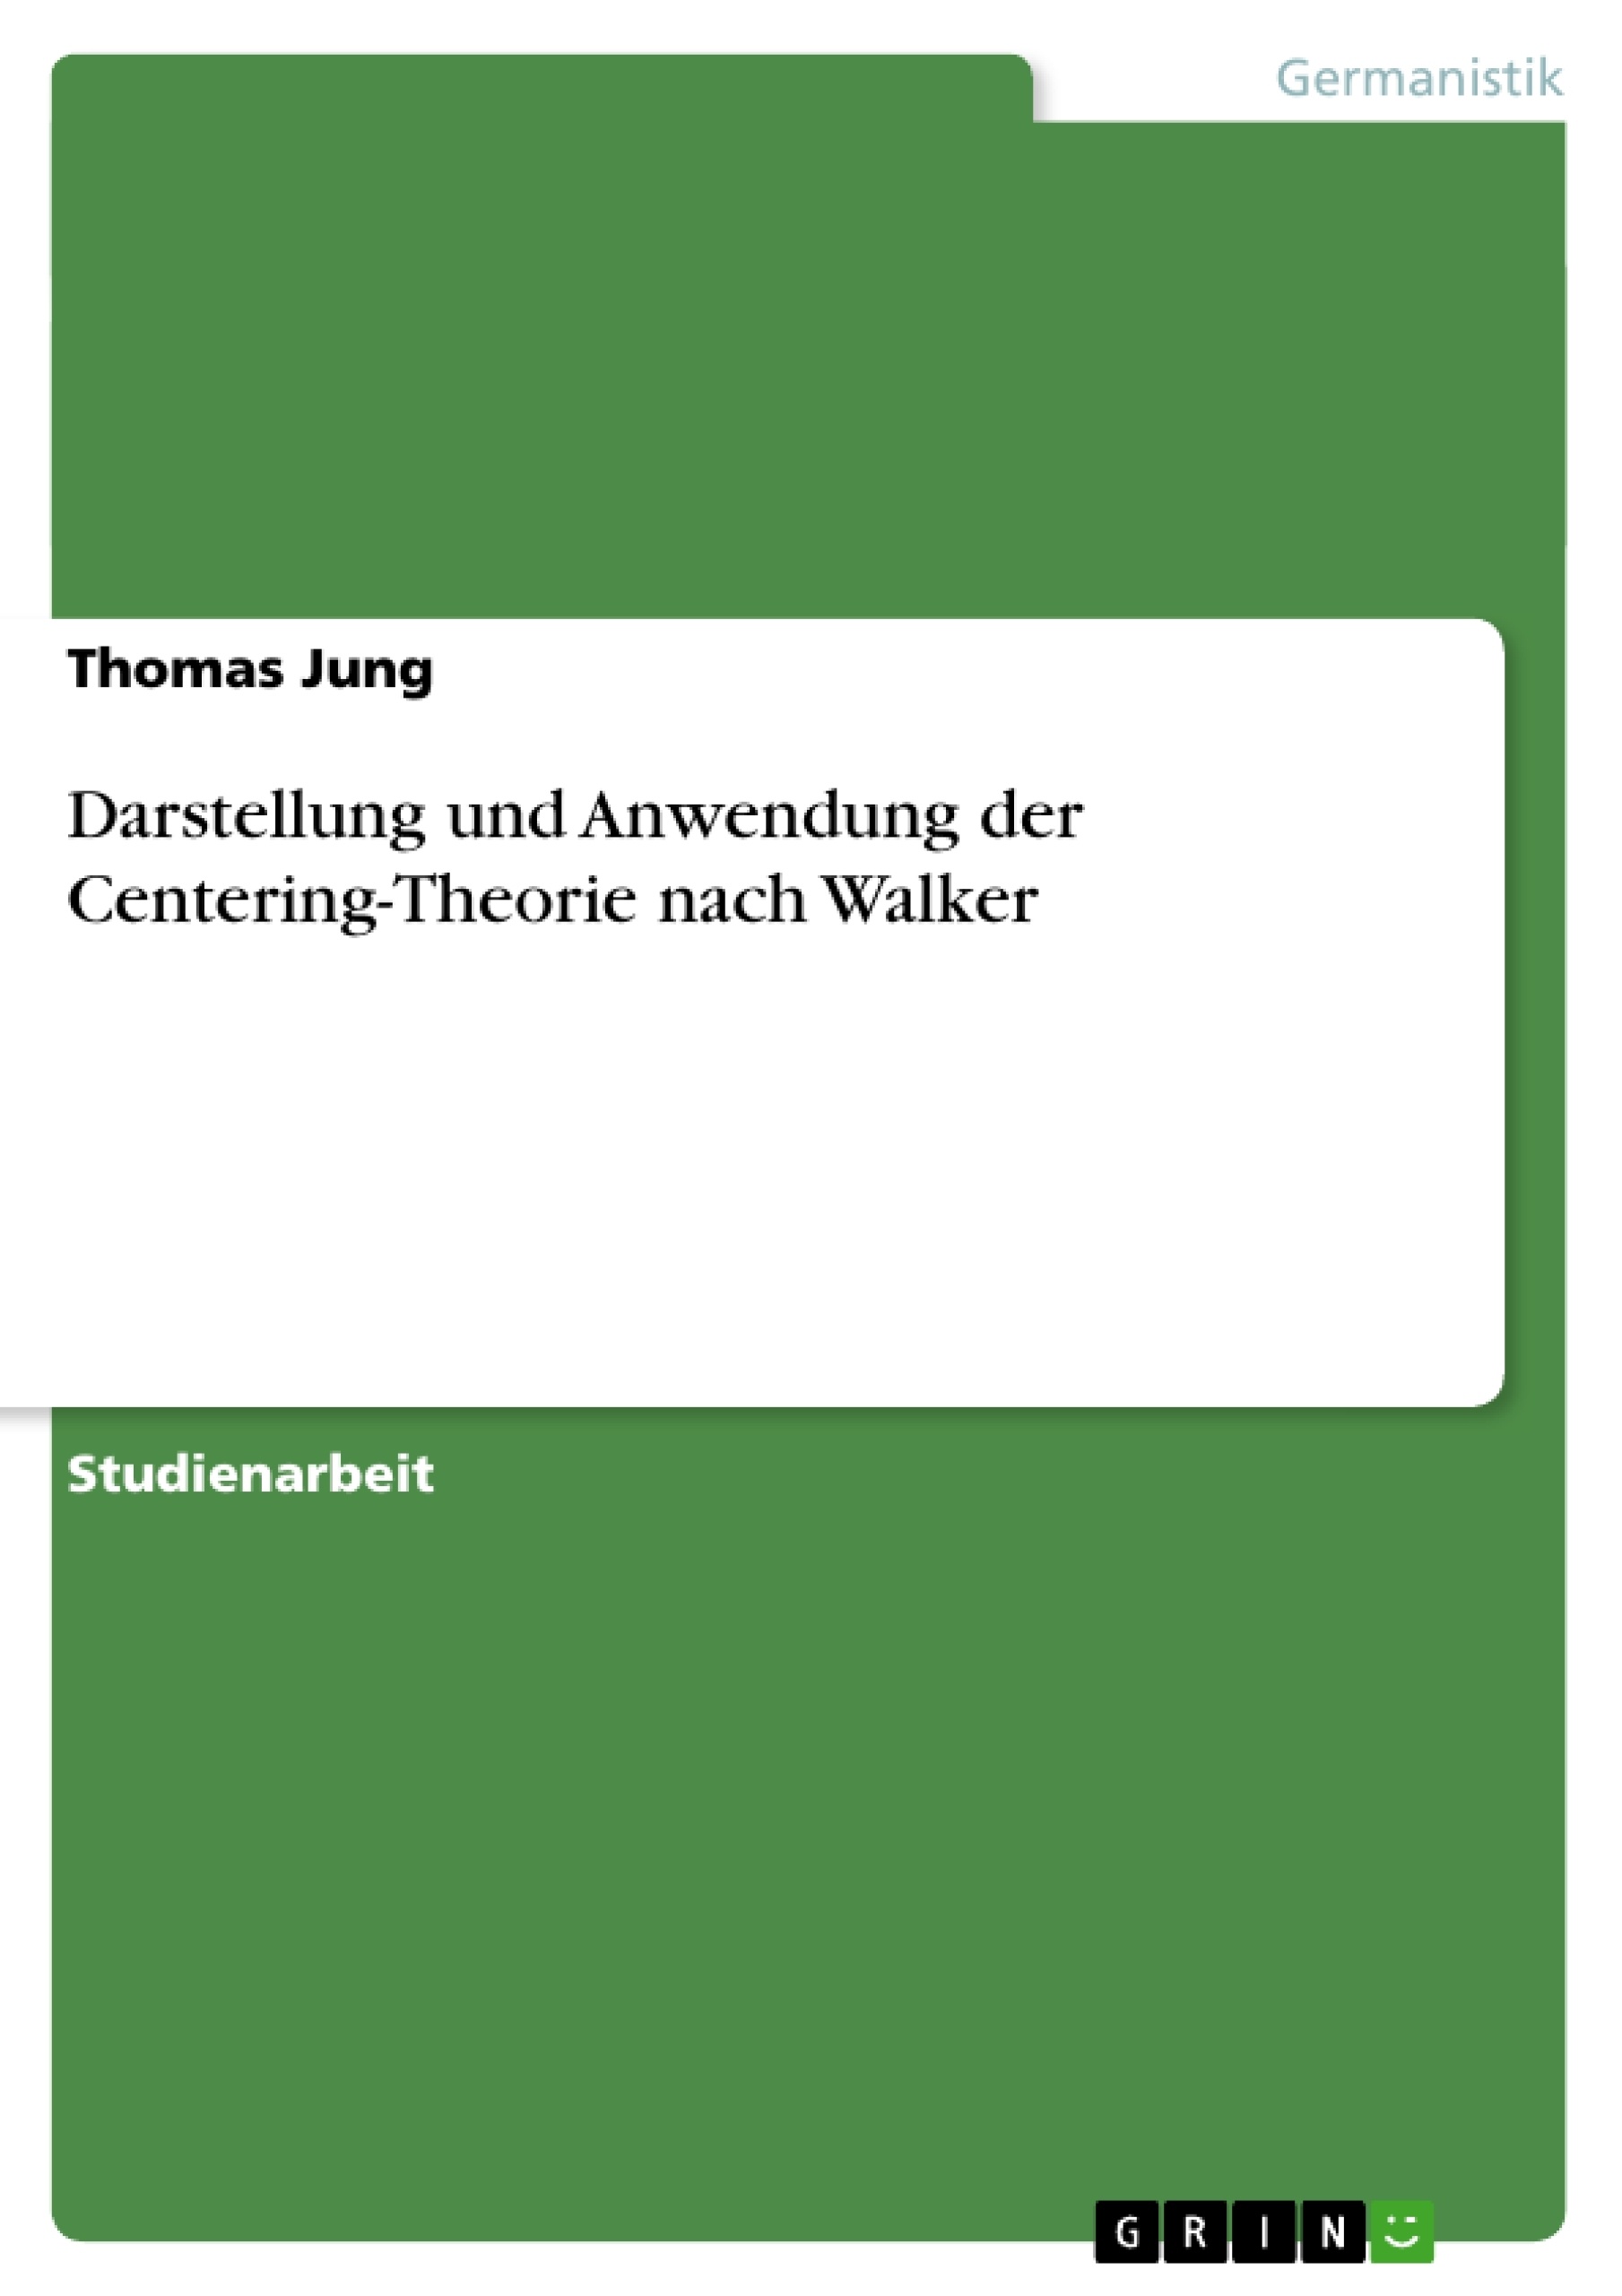 Title: Darstellung und Anwendung der Centering-Theorie nach Walker